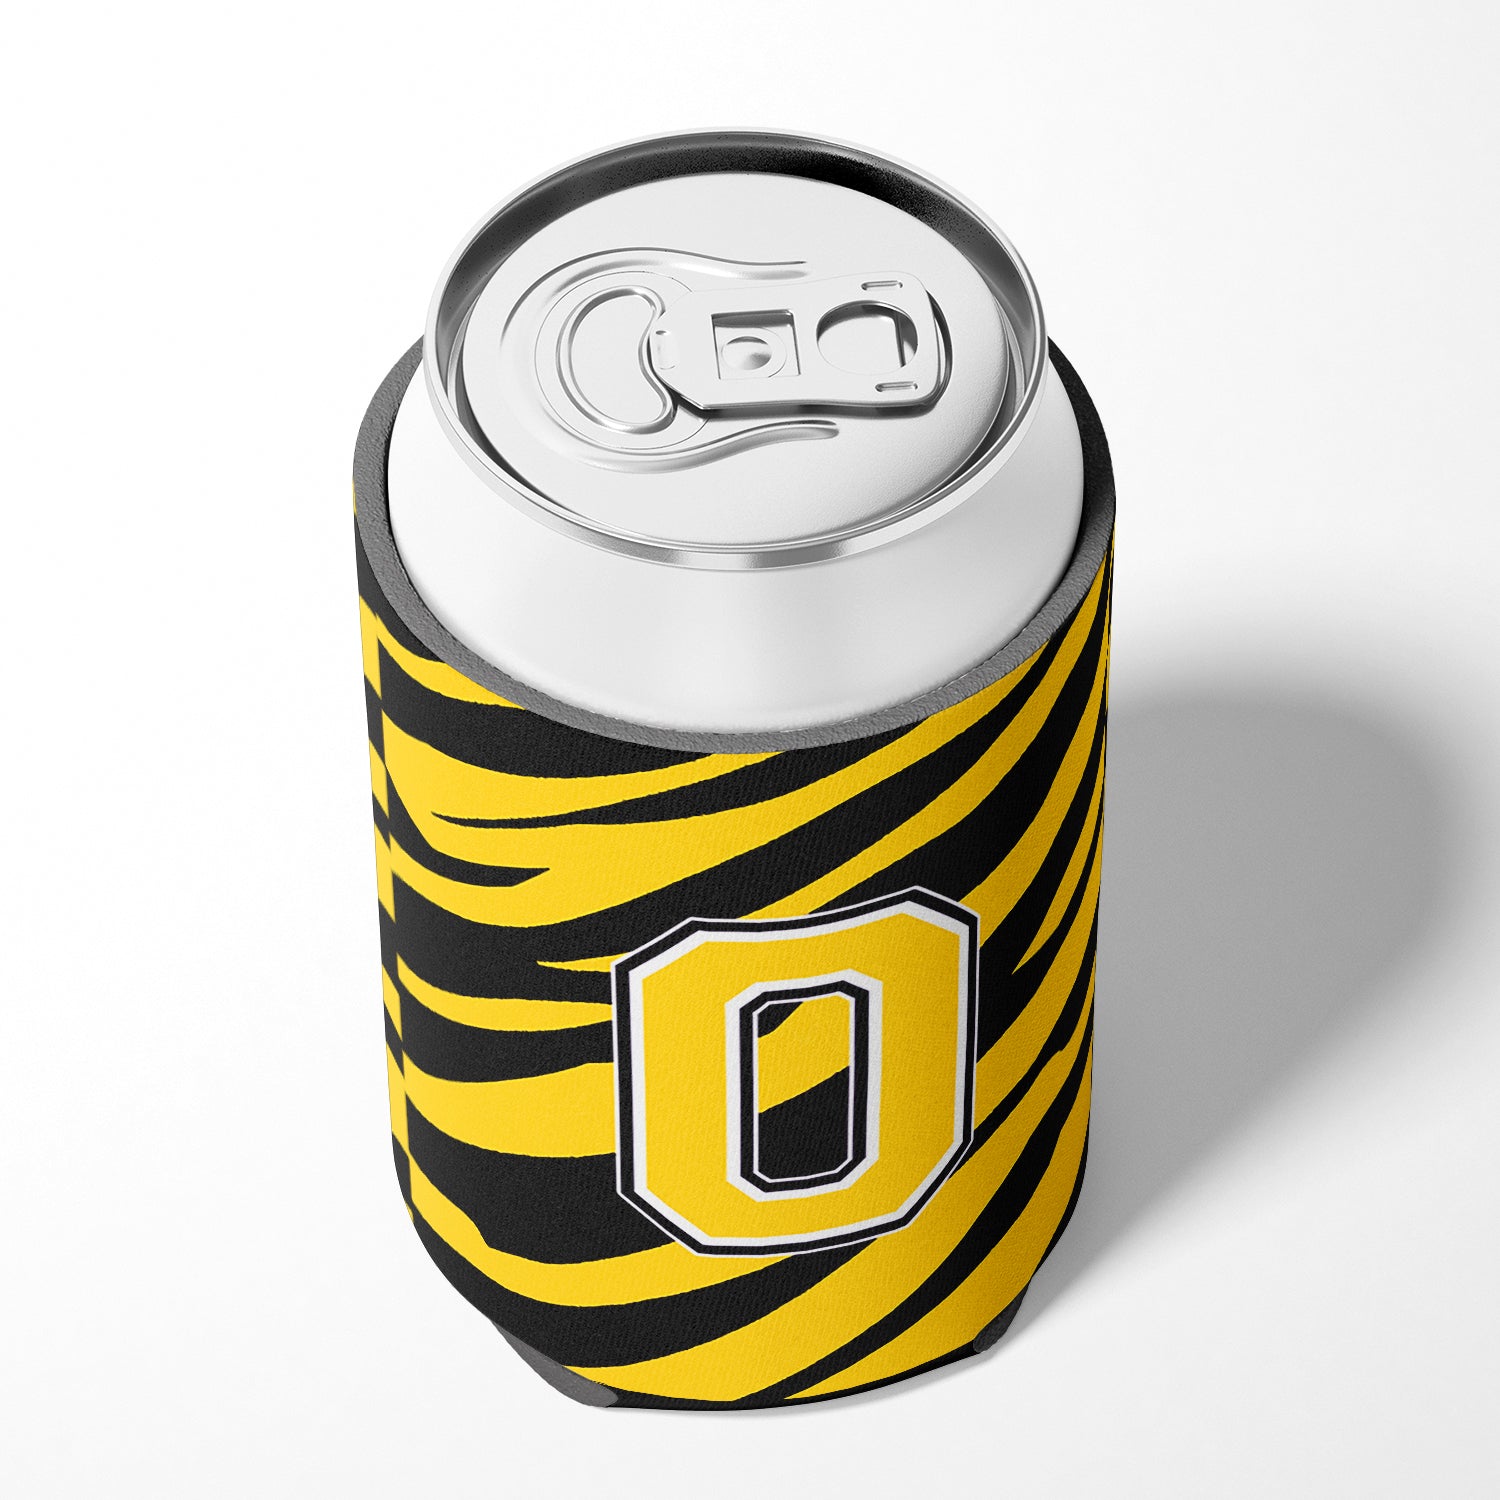 Lettre O monogramme initial - Tiger Stripe - Black Gold Can Beverage Insulator Hugger